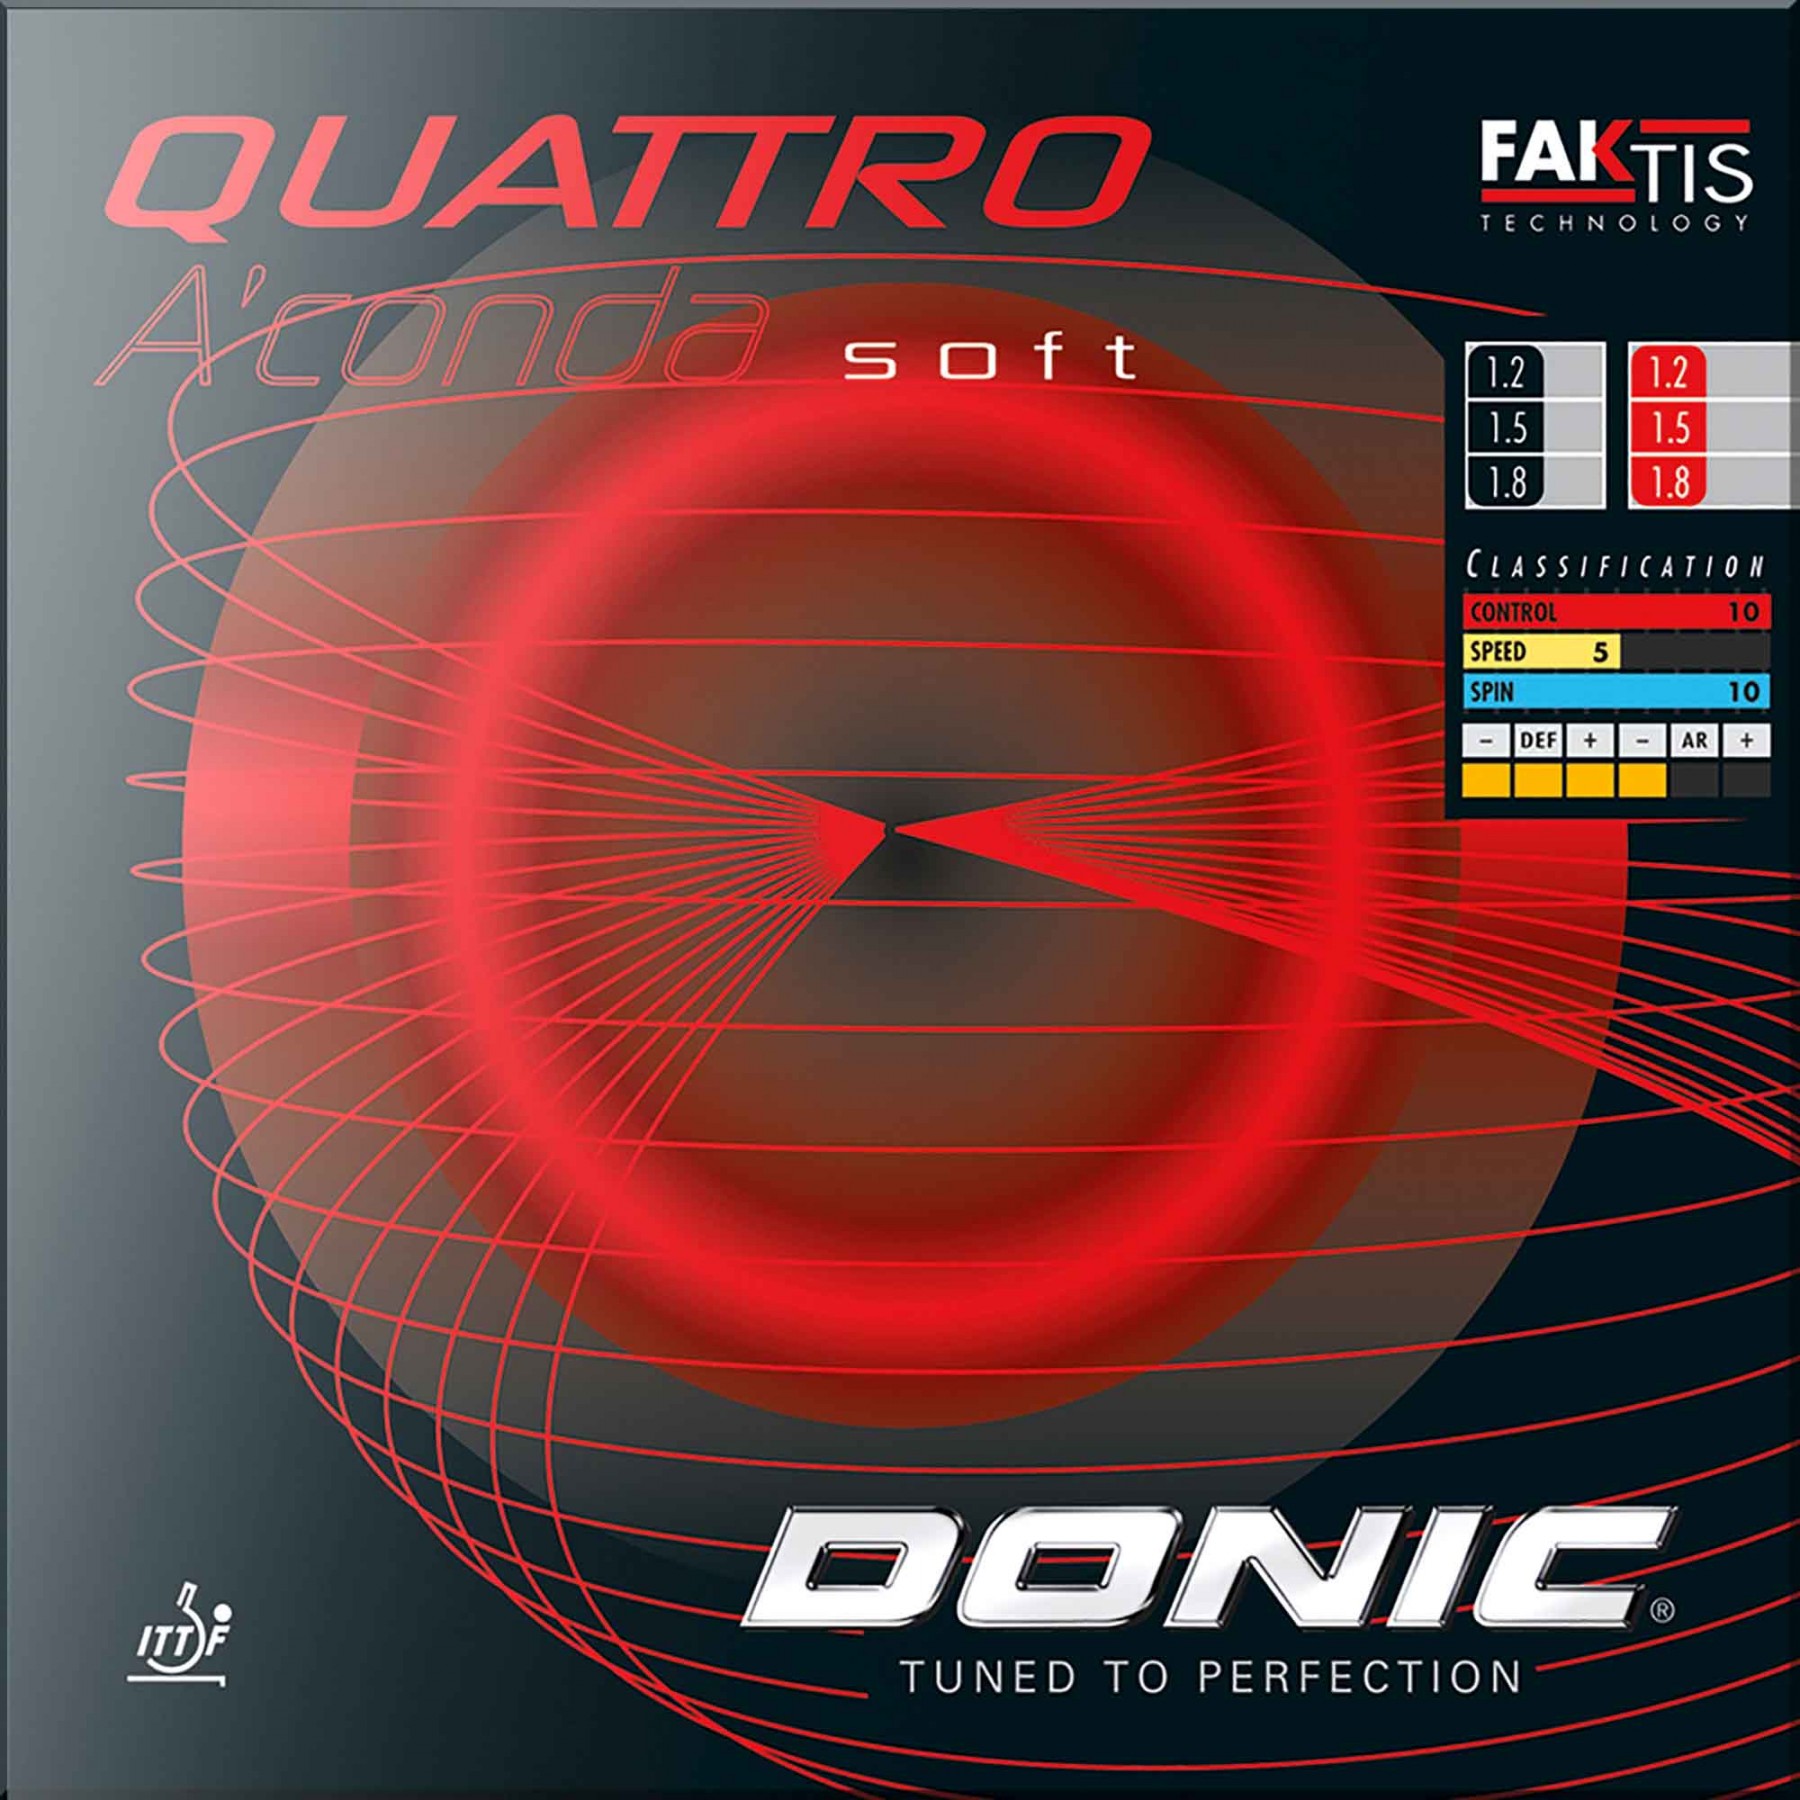 Donic Quattro A'conda Soft von Donic